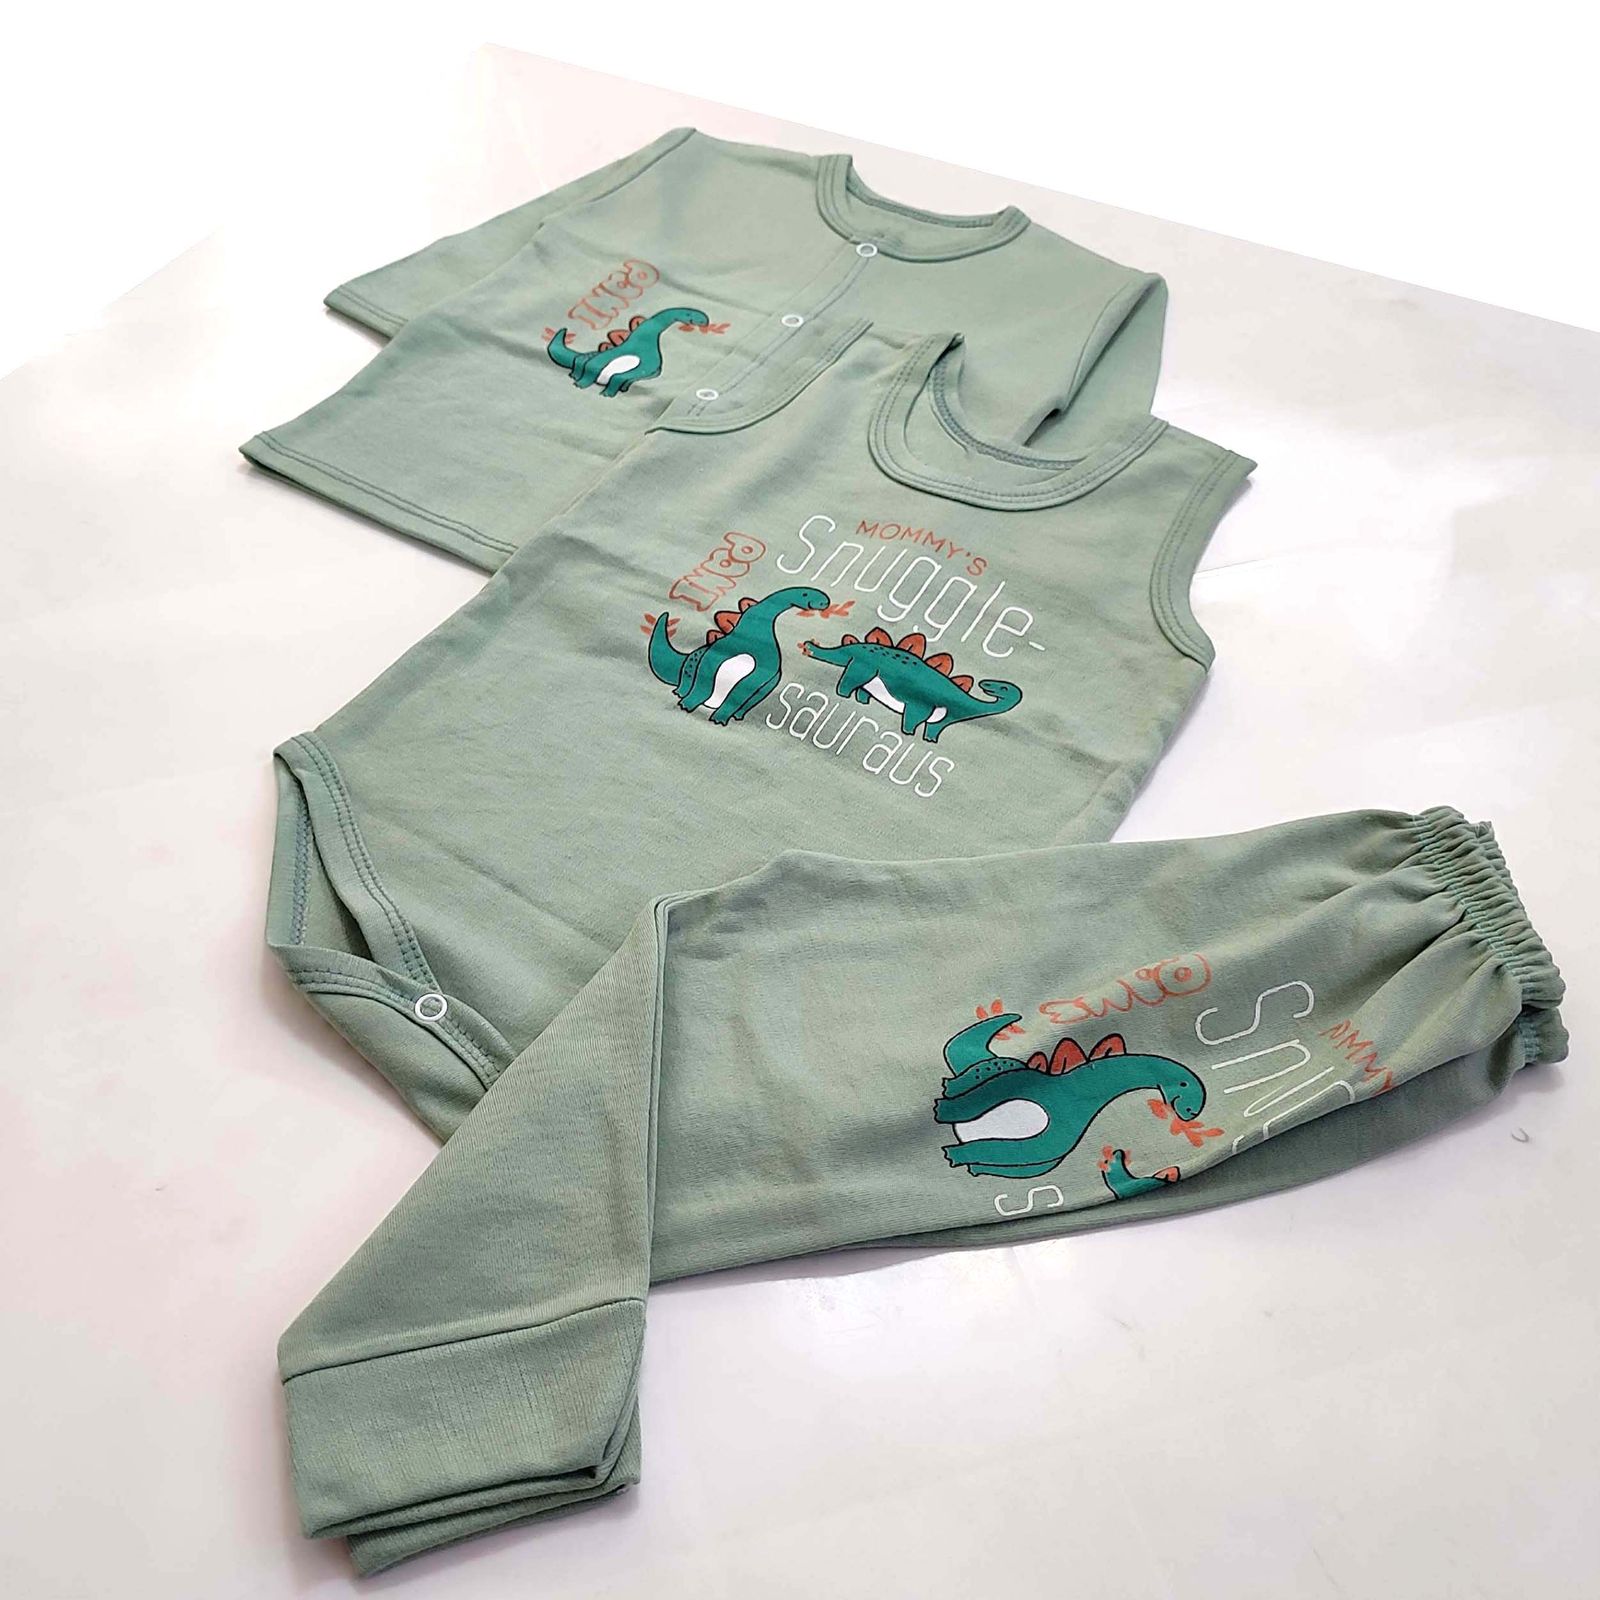 ست 3 تکه لباس نوزادی مدل دایناسور کد 3926 رنگ سبز -  - 7